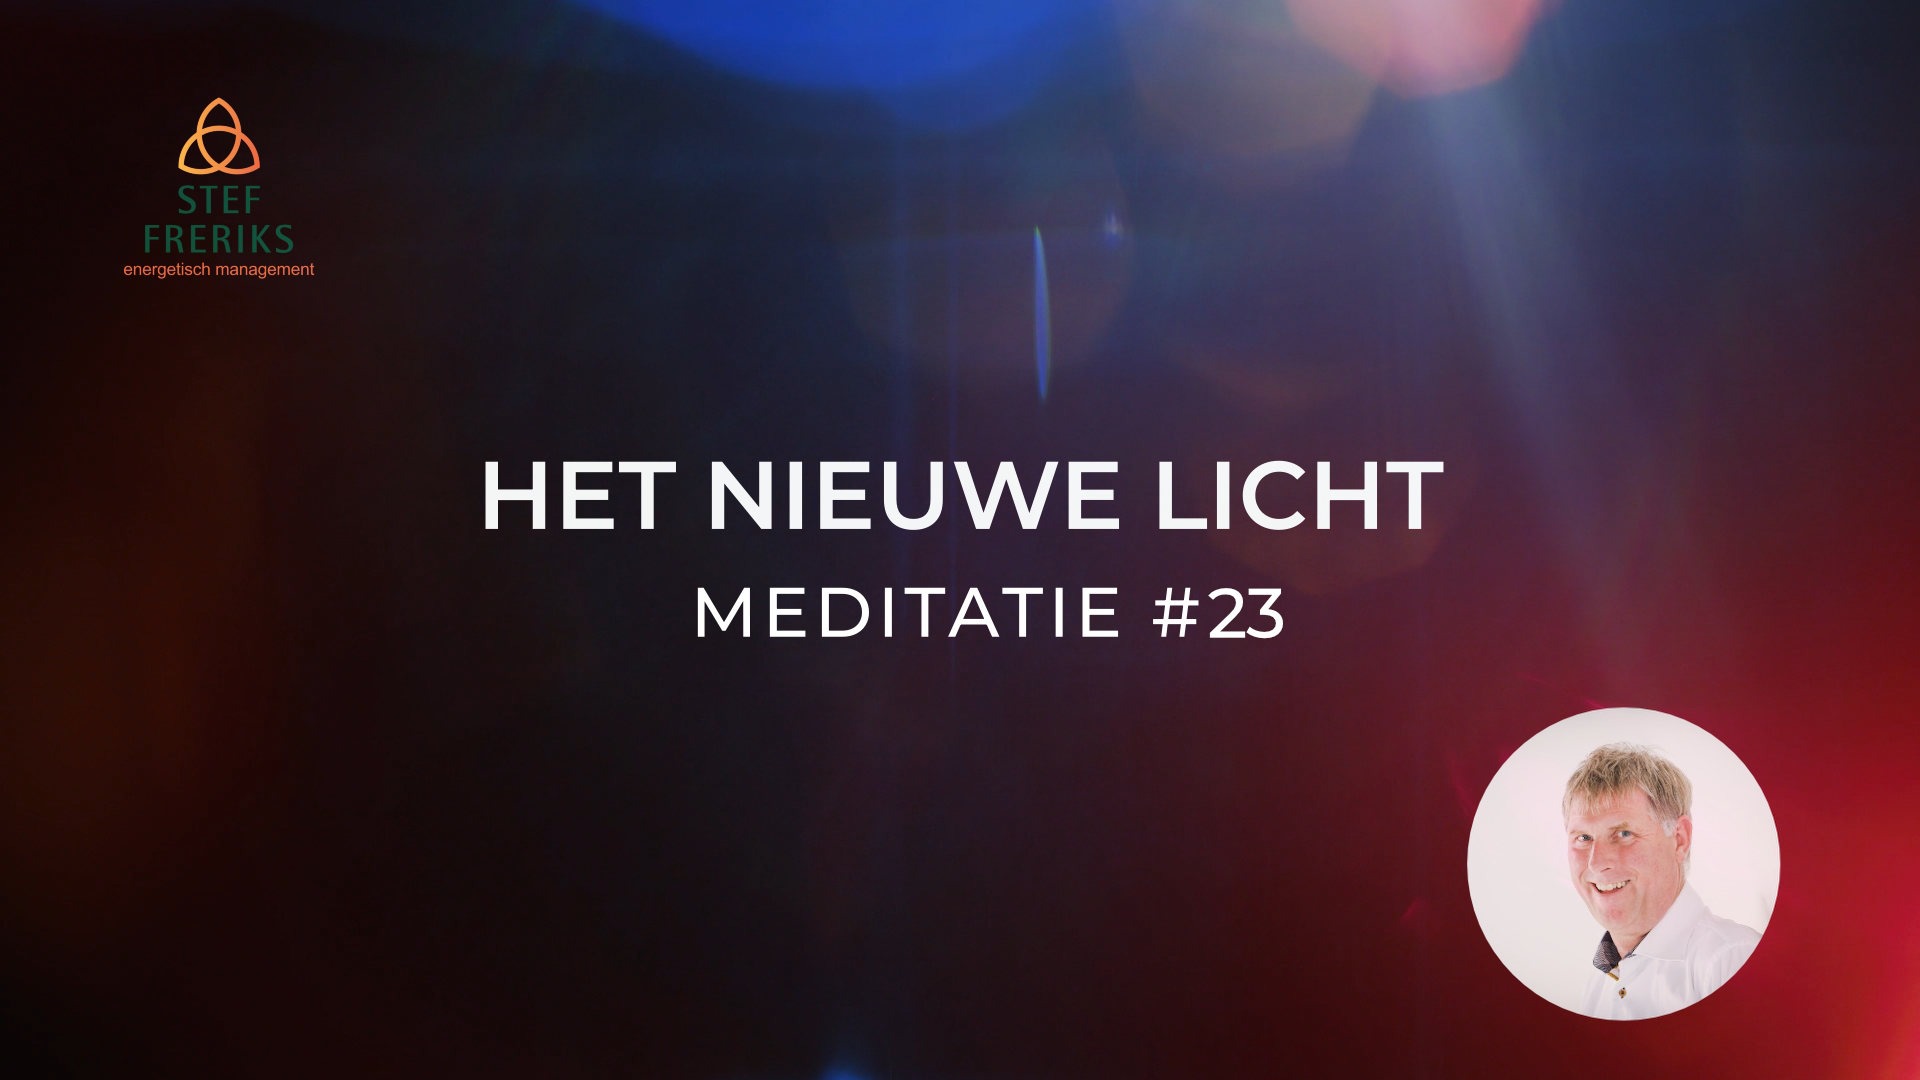 Meditatie #23 uit de serie Het Nieuwe Licht: Hypochondriën